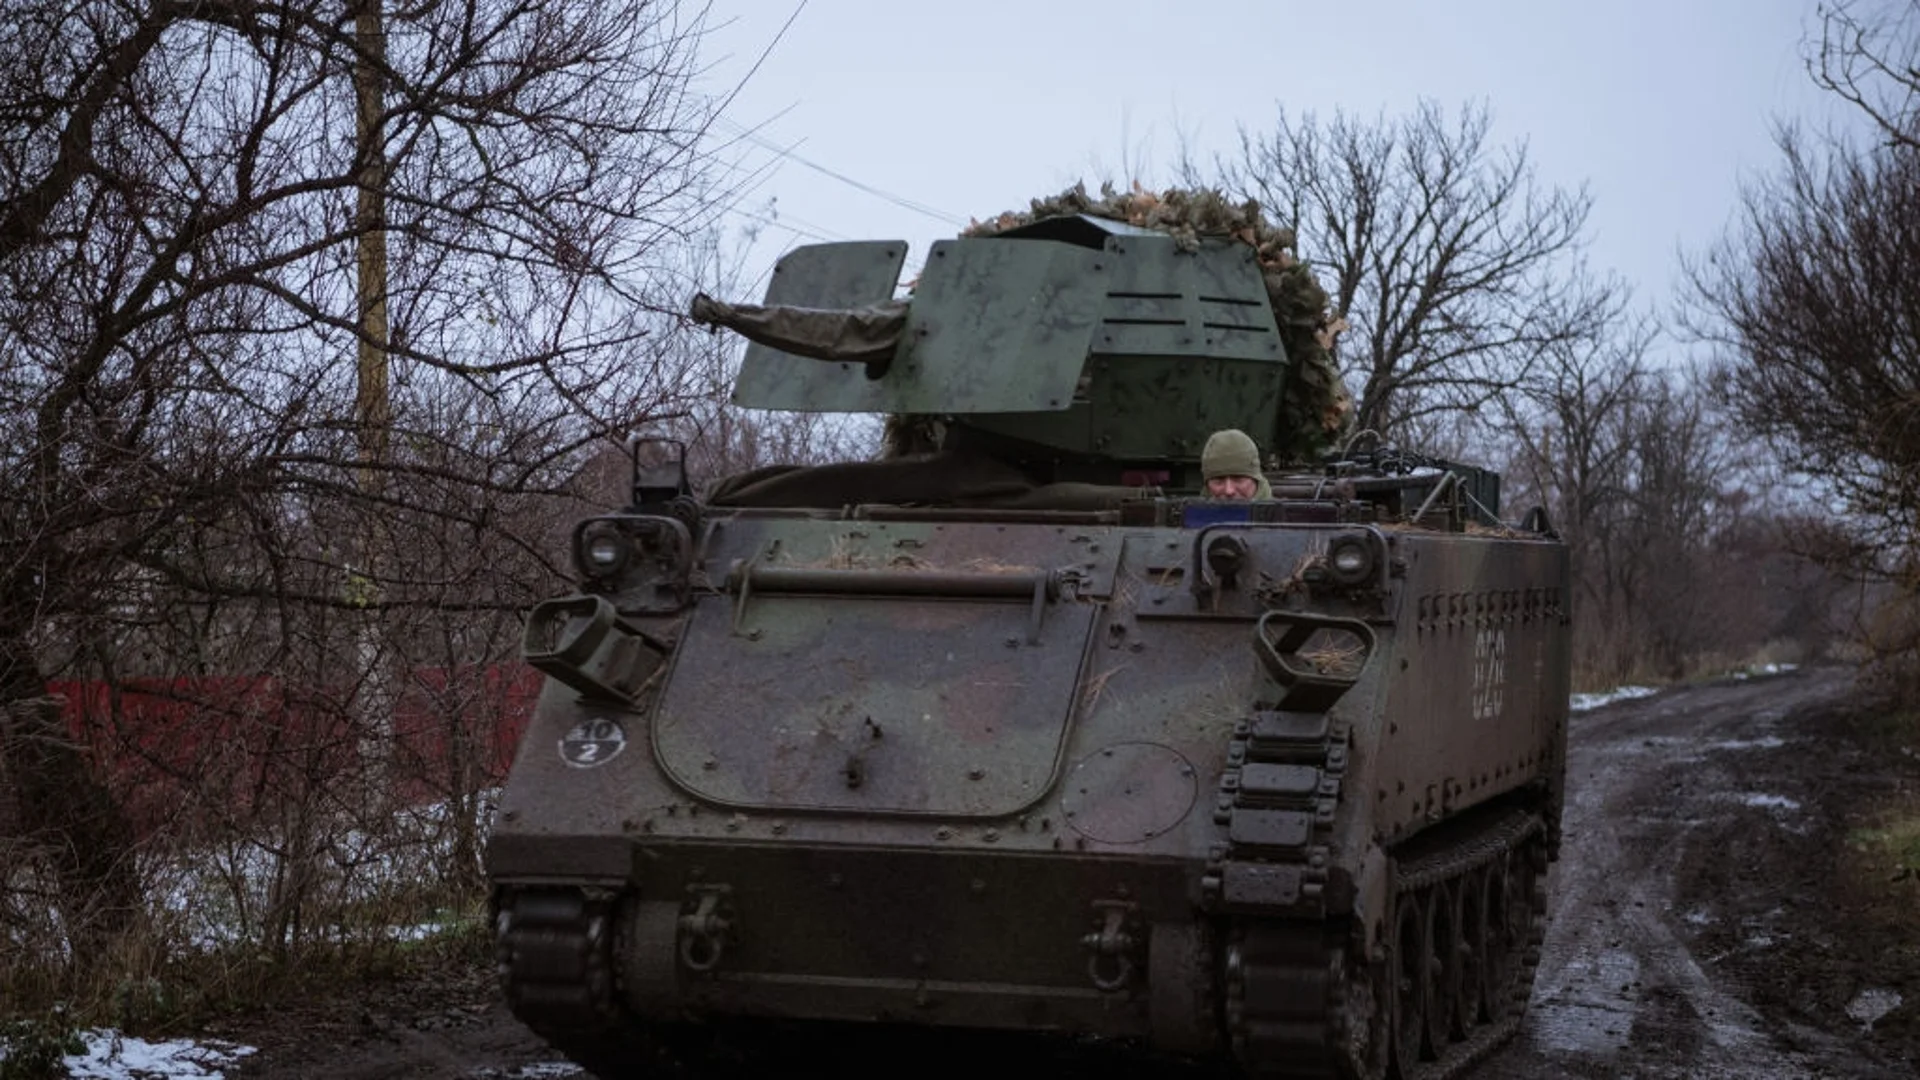 Поръчки и доставки на ново оръжие за Украйна, обзор на боевете (ВИДЕО)